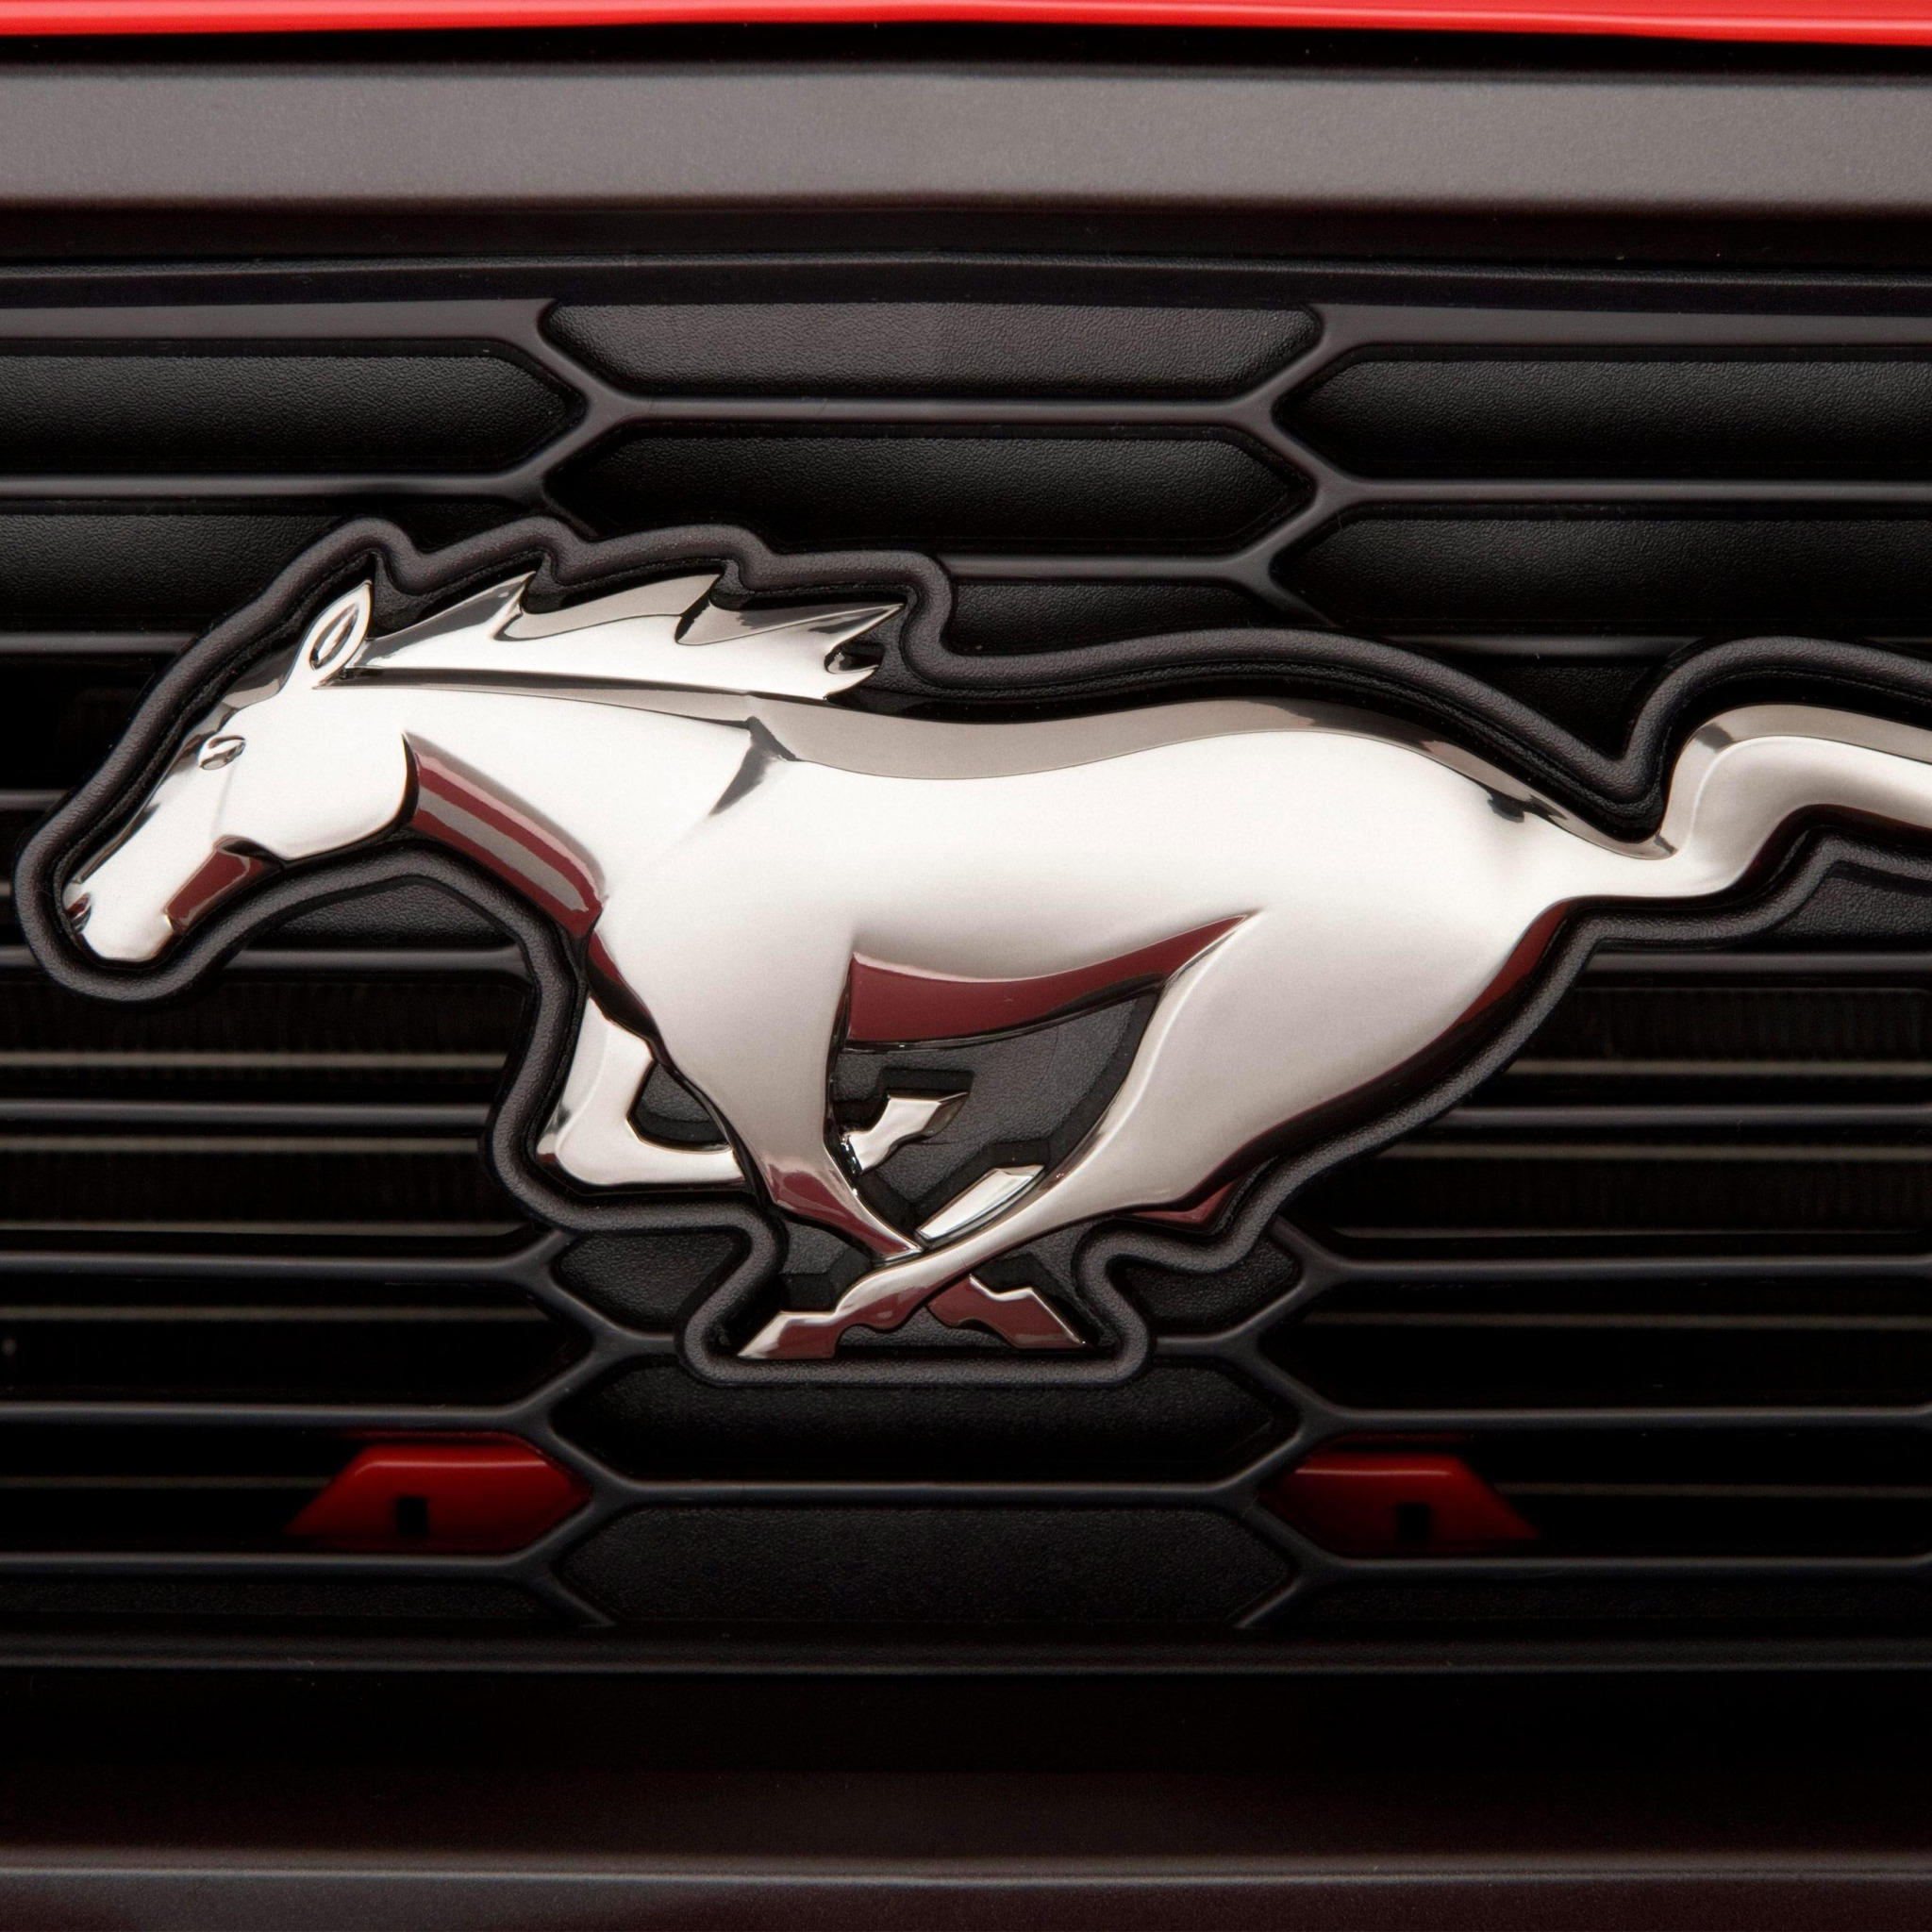 Марка мустанга. Ford Mustang марка. Шильд Форд Мустанг. Форд Мустанг эмблема. Знак машины Форд Мустанг.